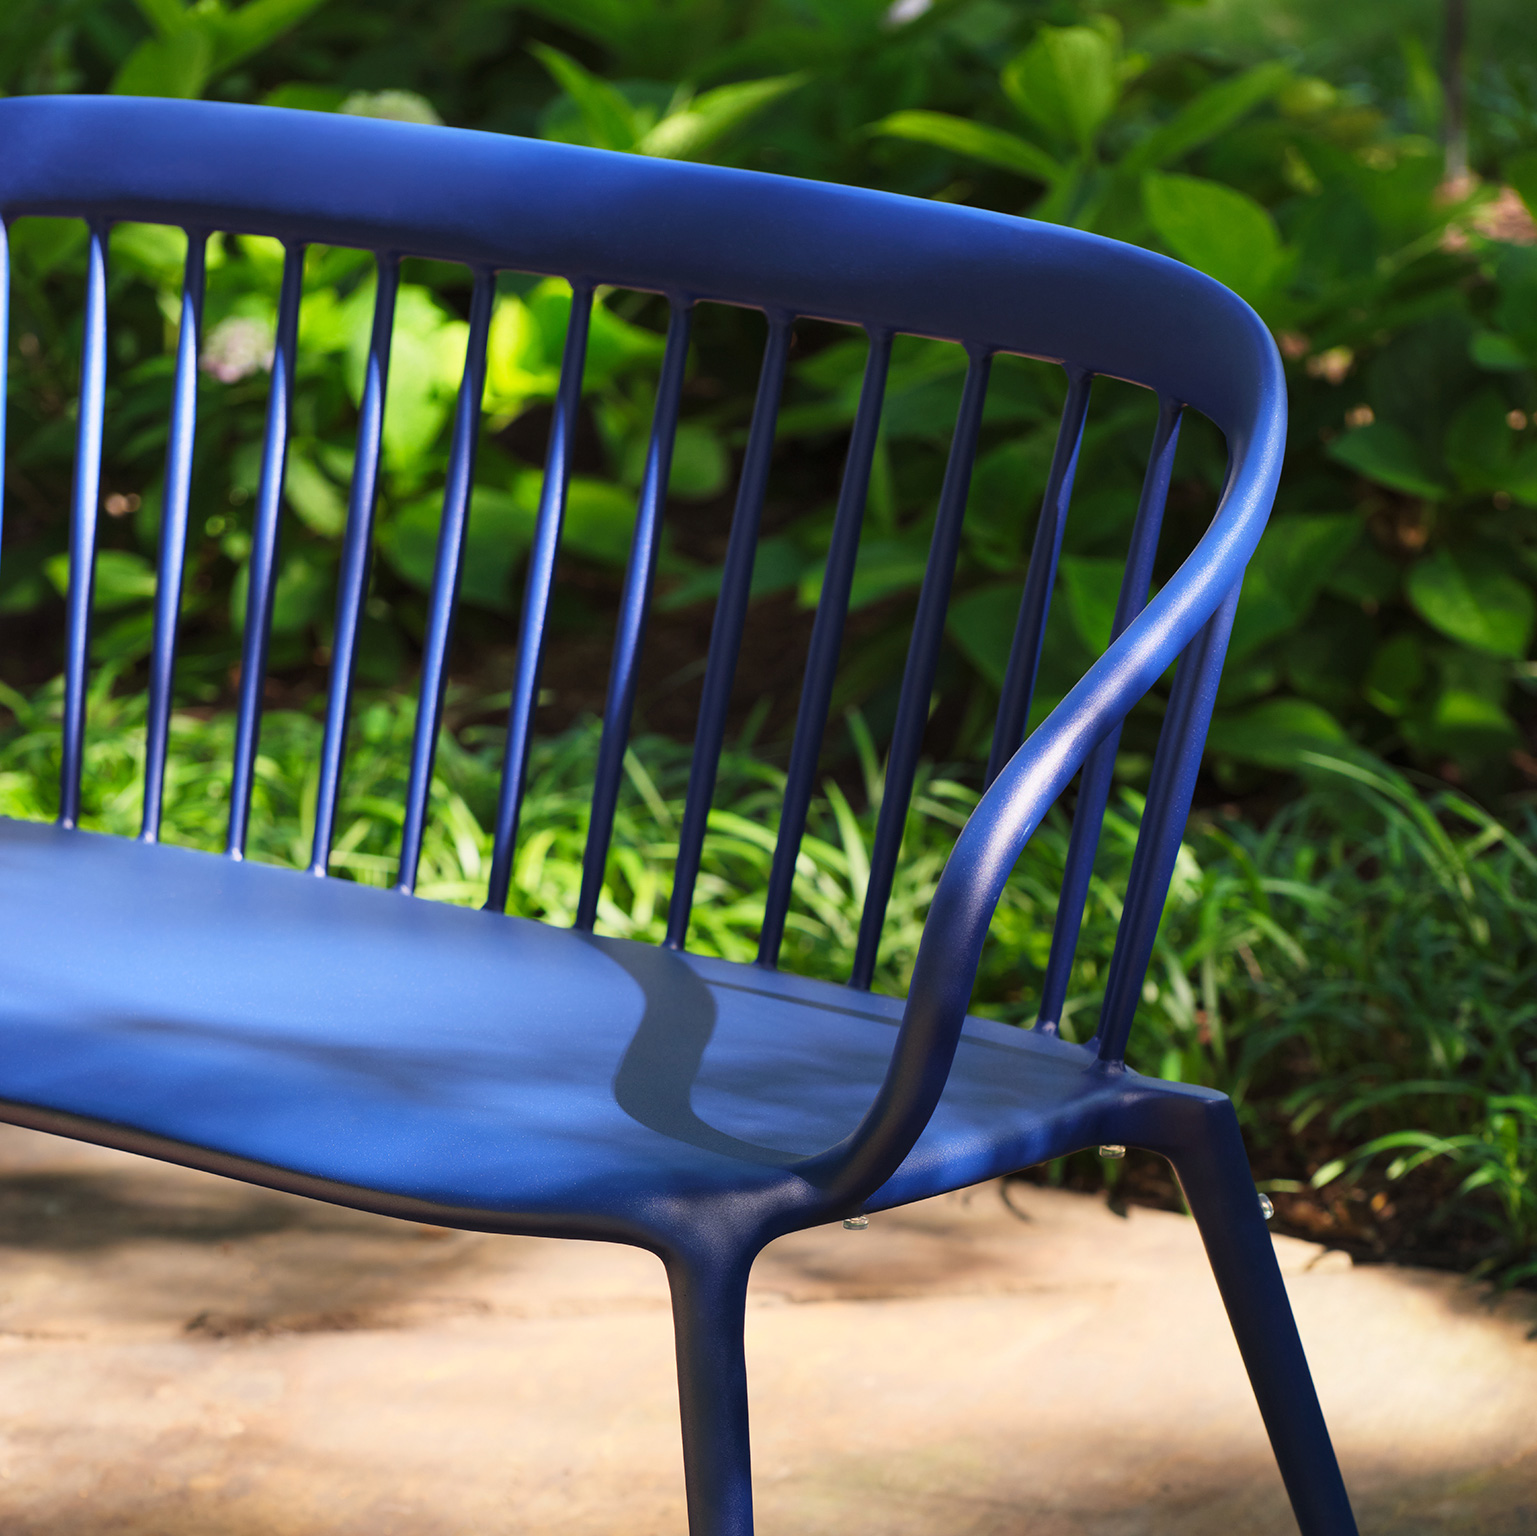 Windor bench by Woodard in blue